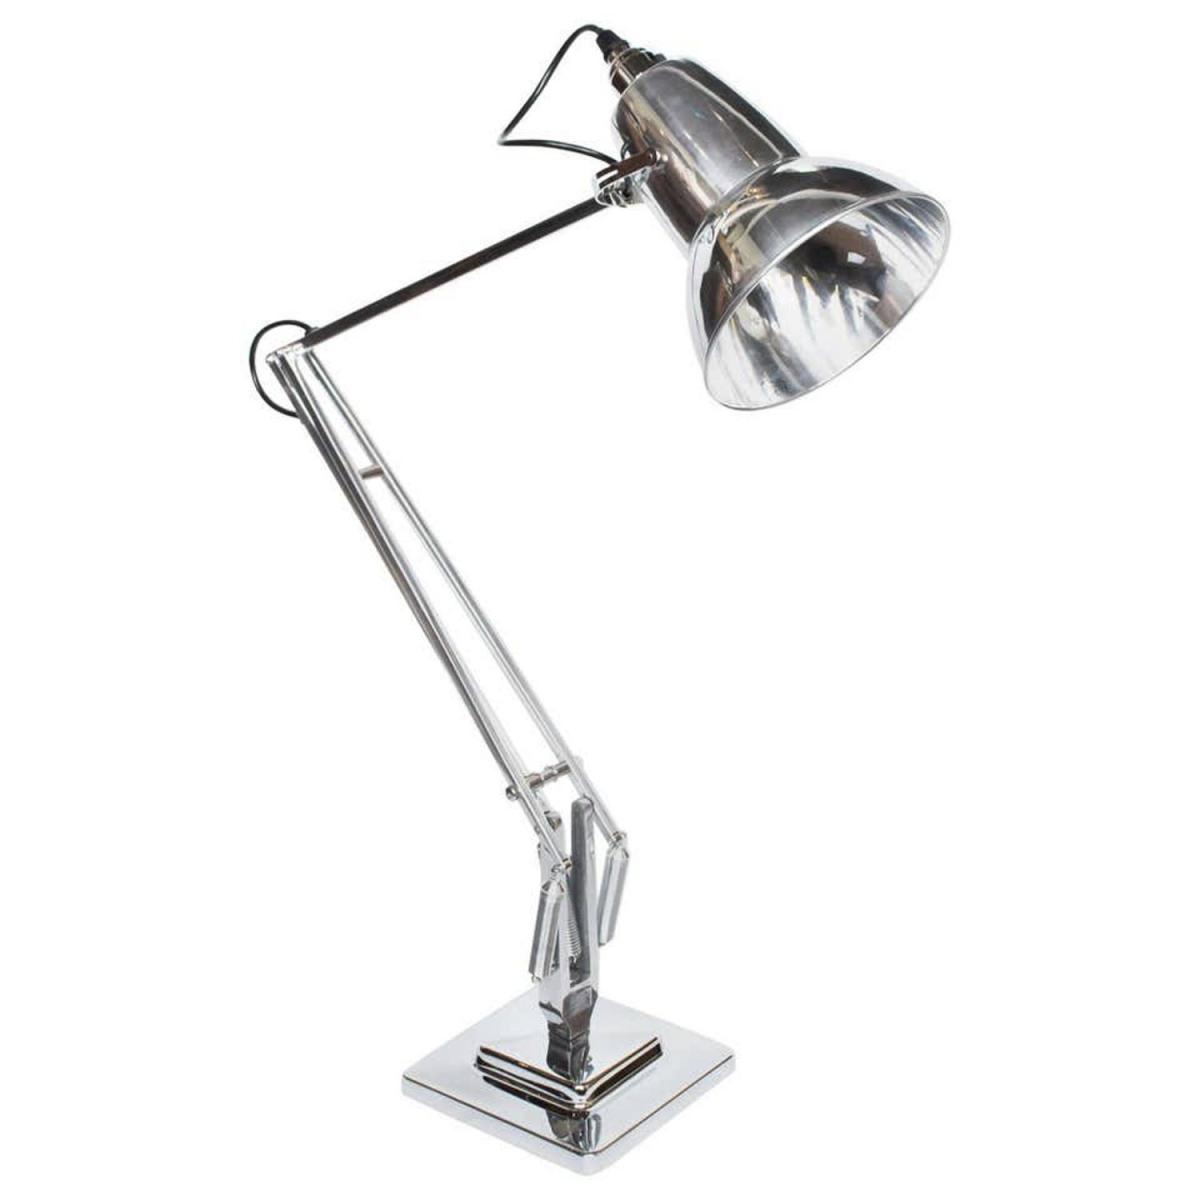 Anglepoise Desk Lamp, Herbert Terry & Sons 